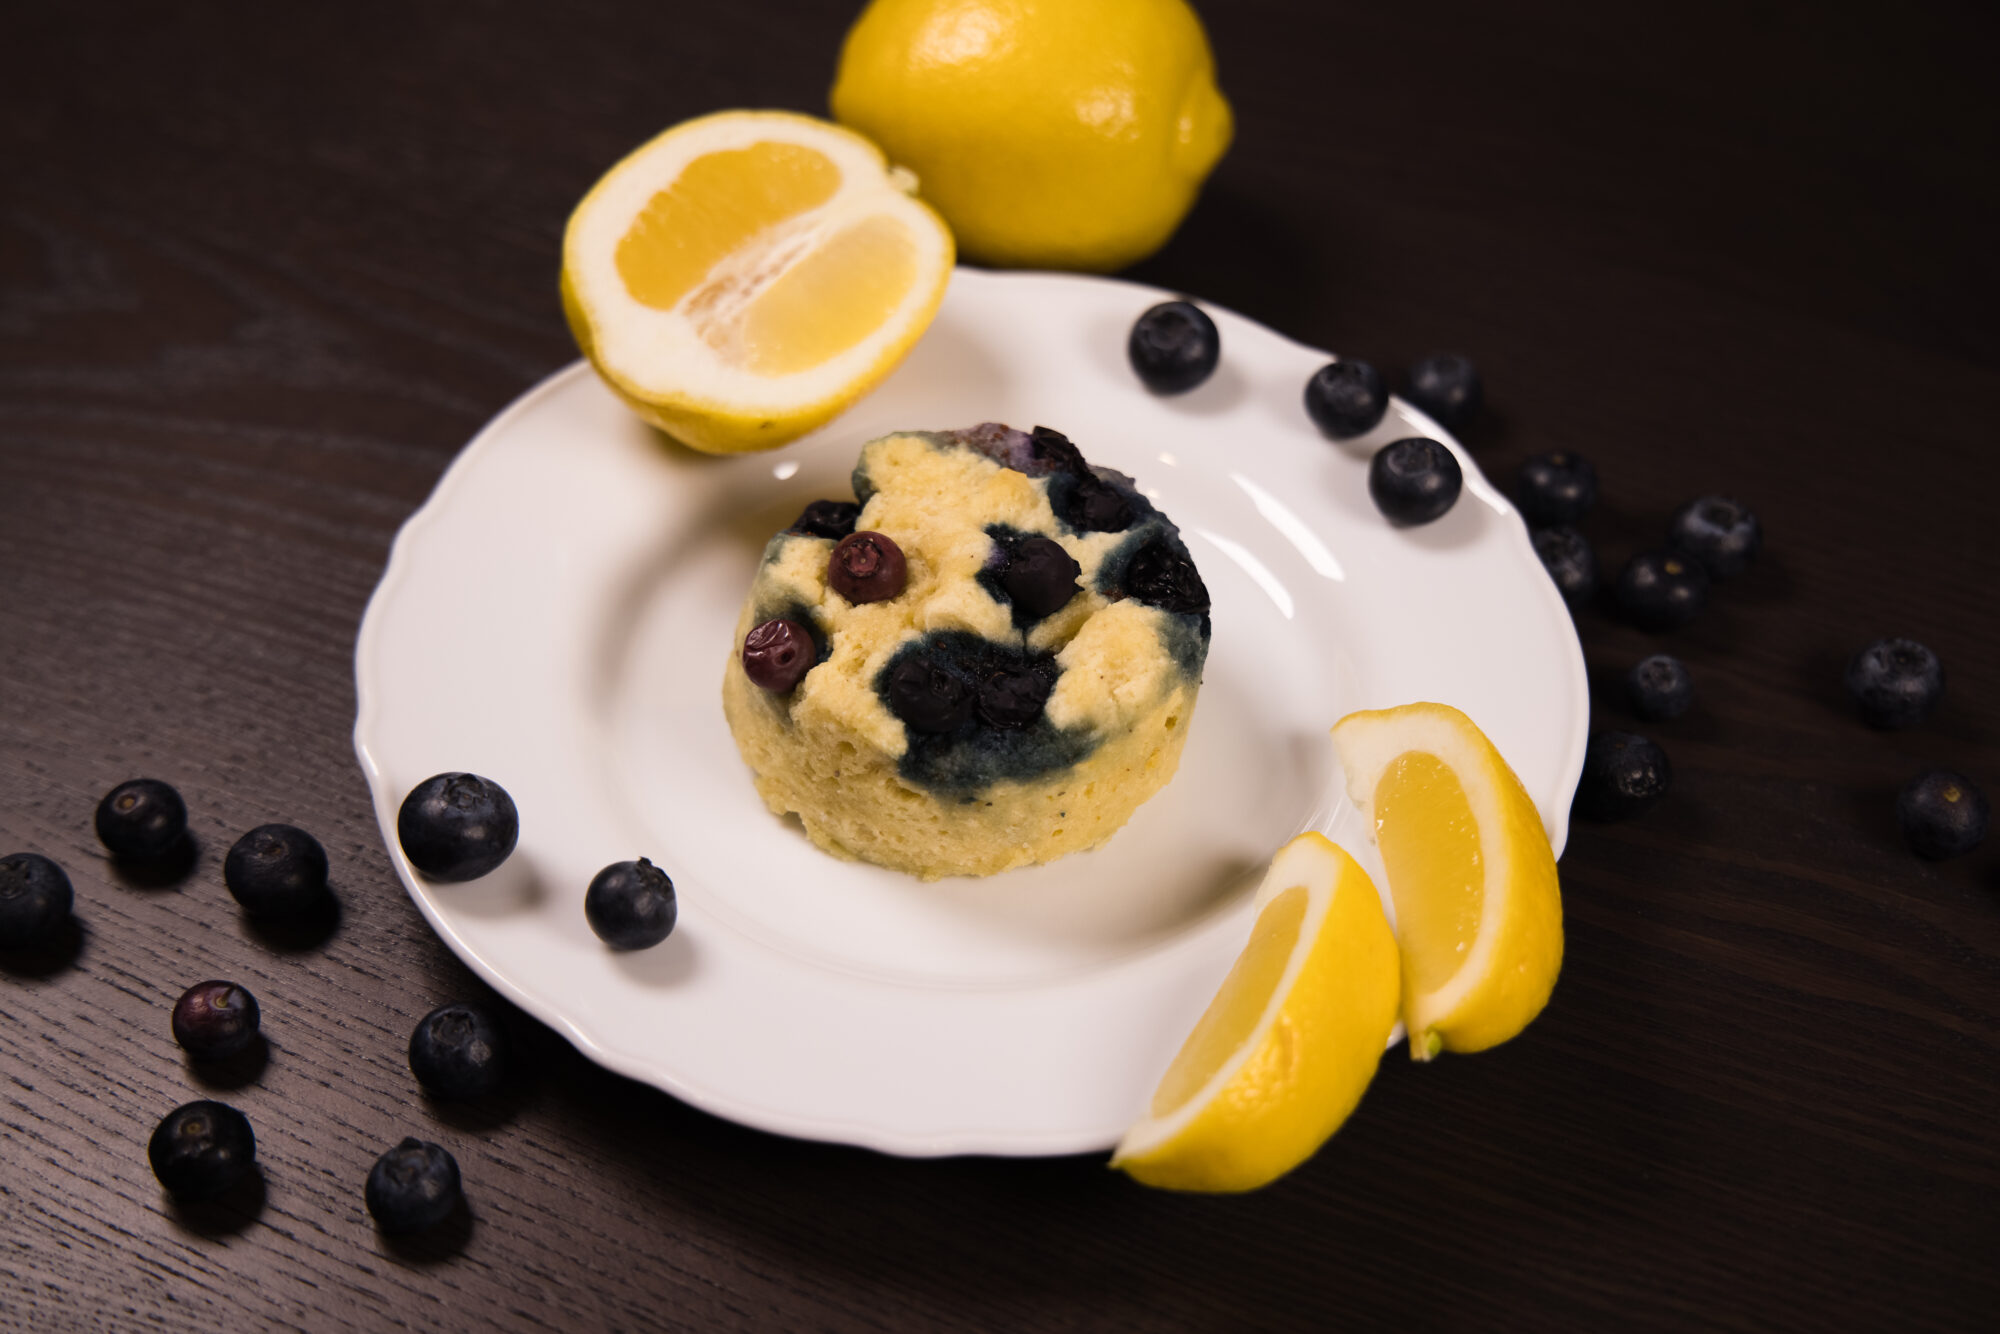 Close up - Lemon Blueberry Mug Cake with lemon wedges on the side.